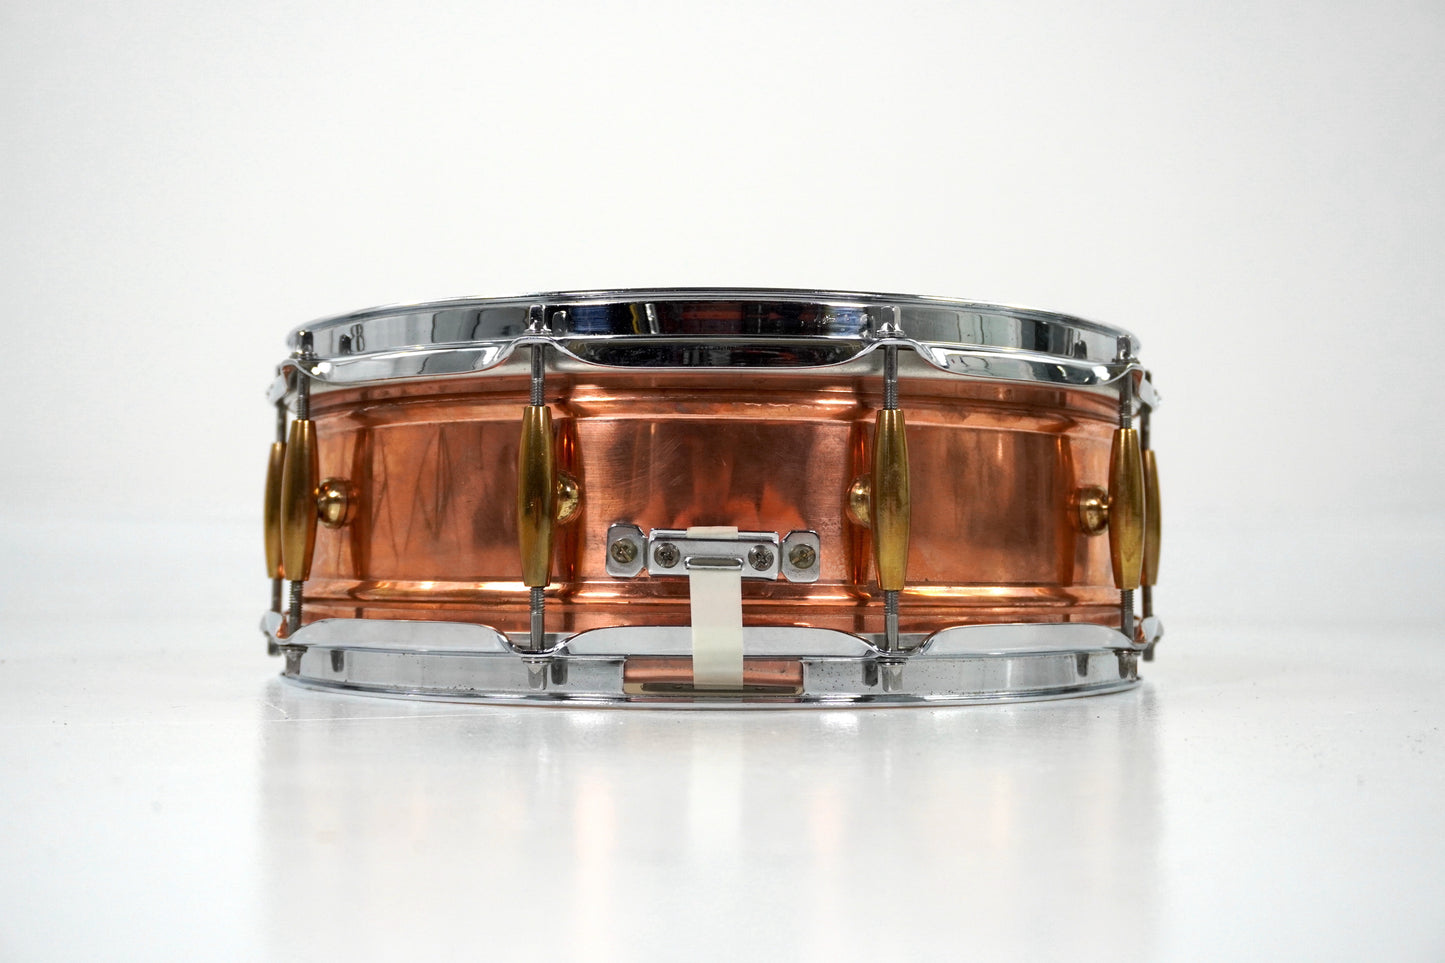 G.A.M. Roberto Spizzichino Copper Snare Drum